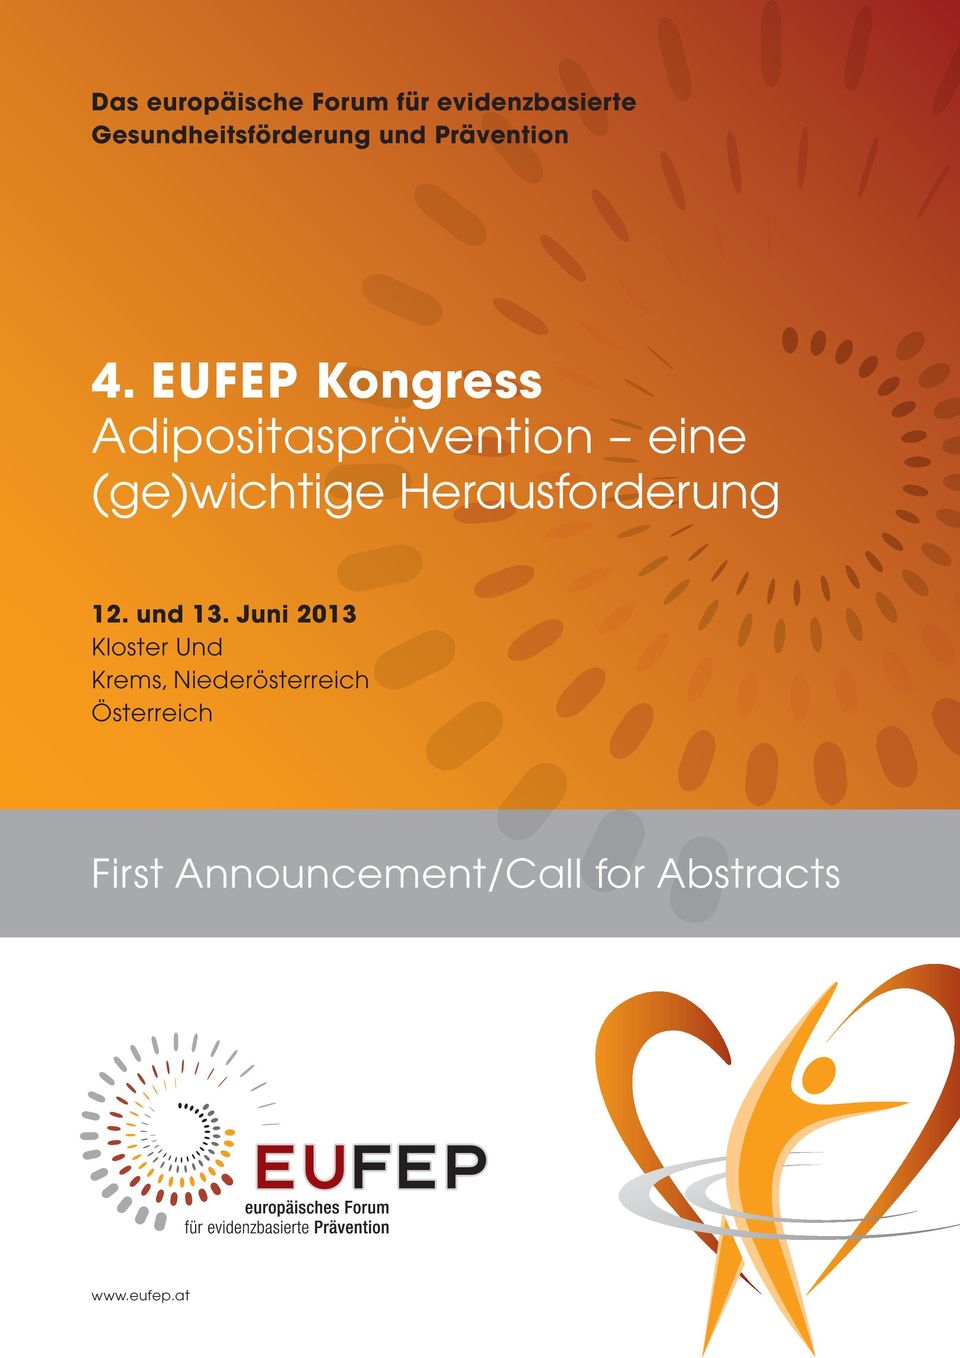 EUFEP Kongress Adipositasprävention eine (ge)wichtige